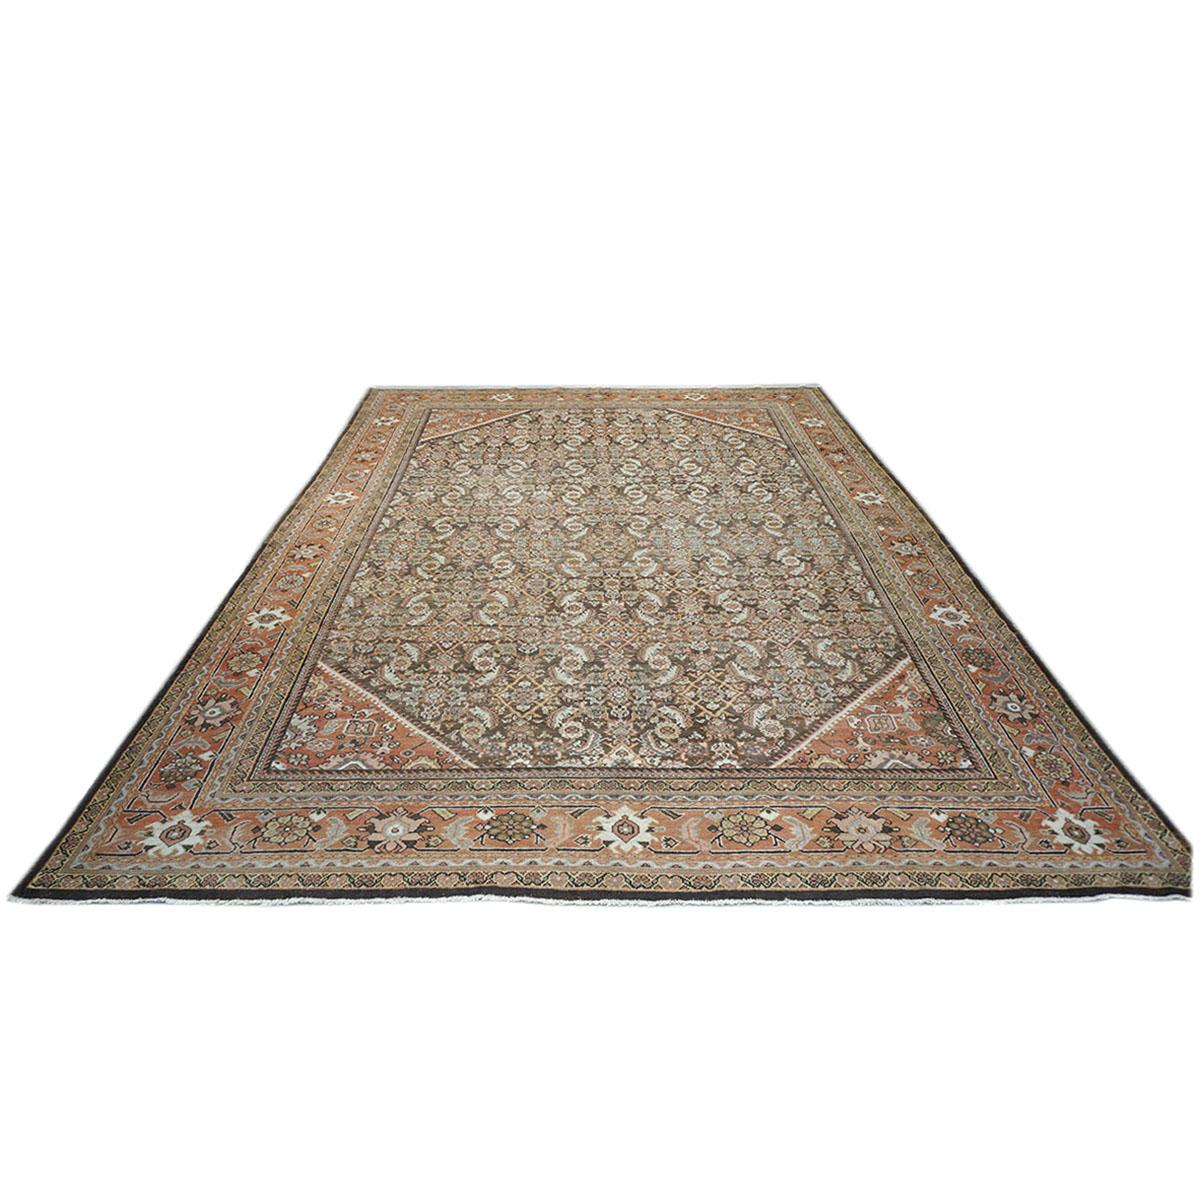 Ashly fine rugs präsentiert einen antiken persischen Sultanabad 10'5 